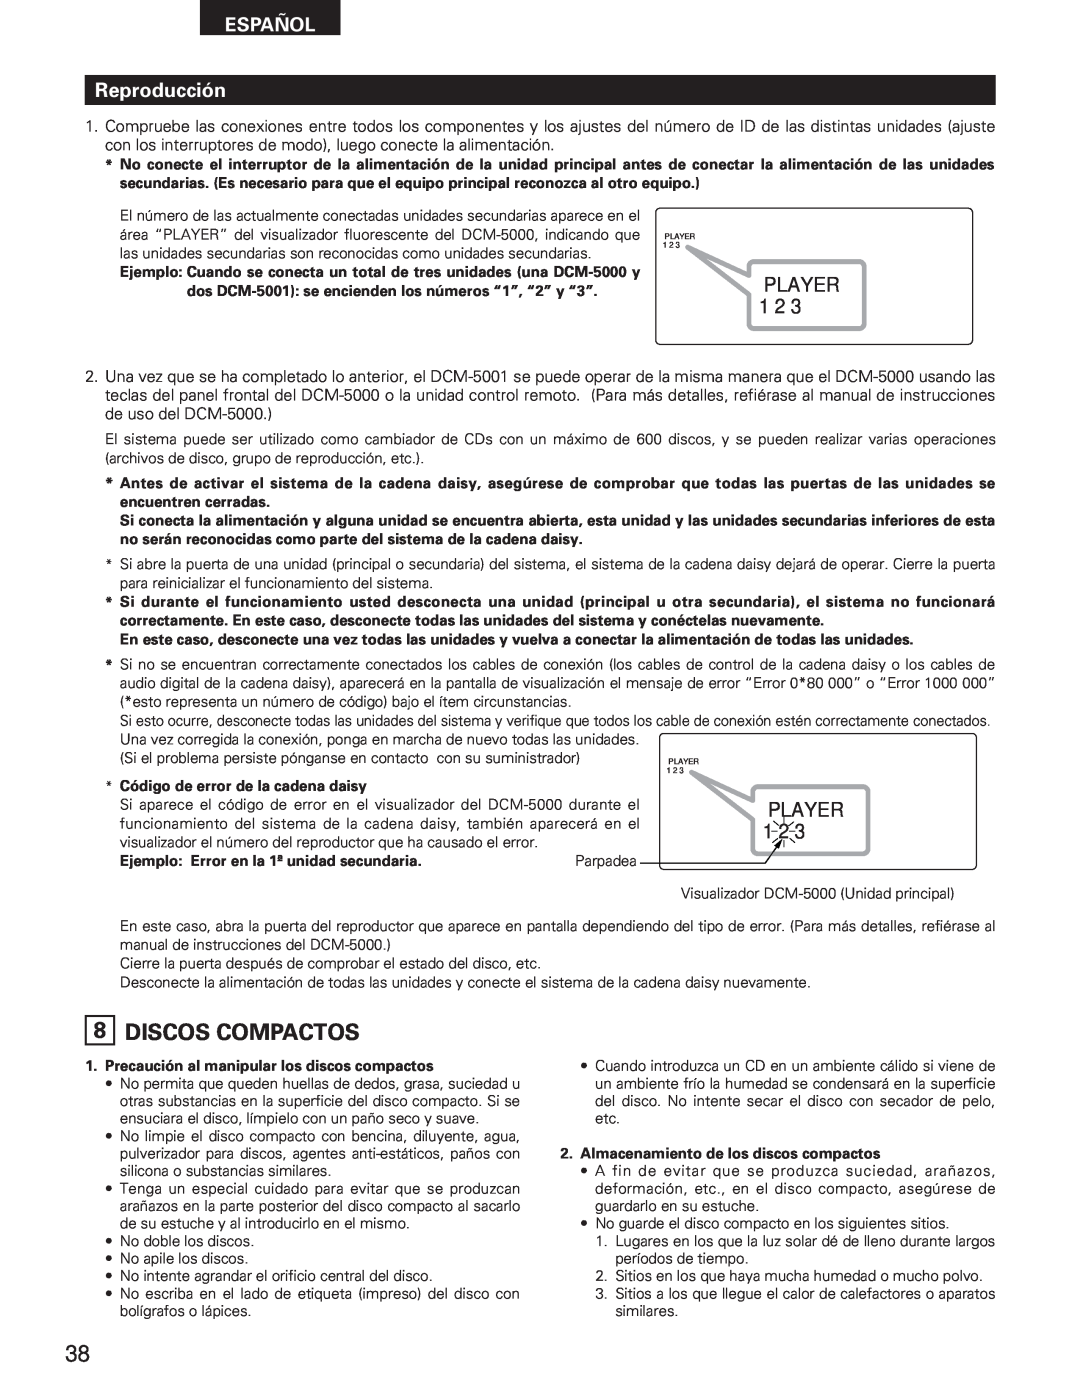 Denon DCM-5001 manual 8DISCOS COMPACTOS, ESPAÑOL Reproducción, Player 